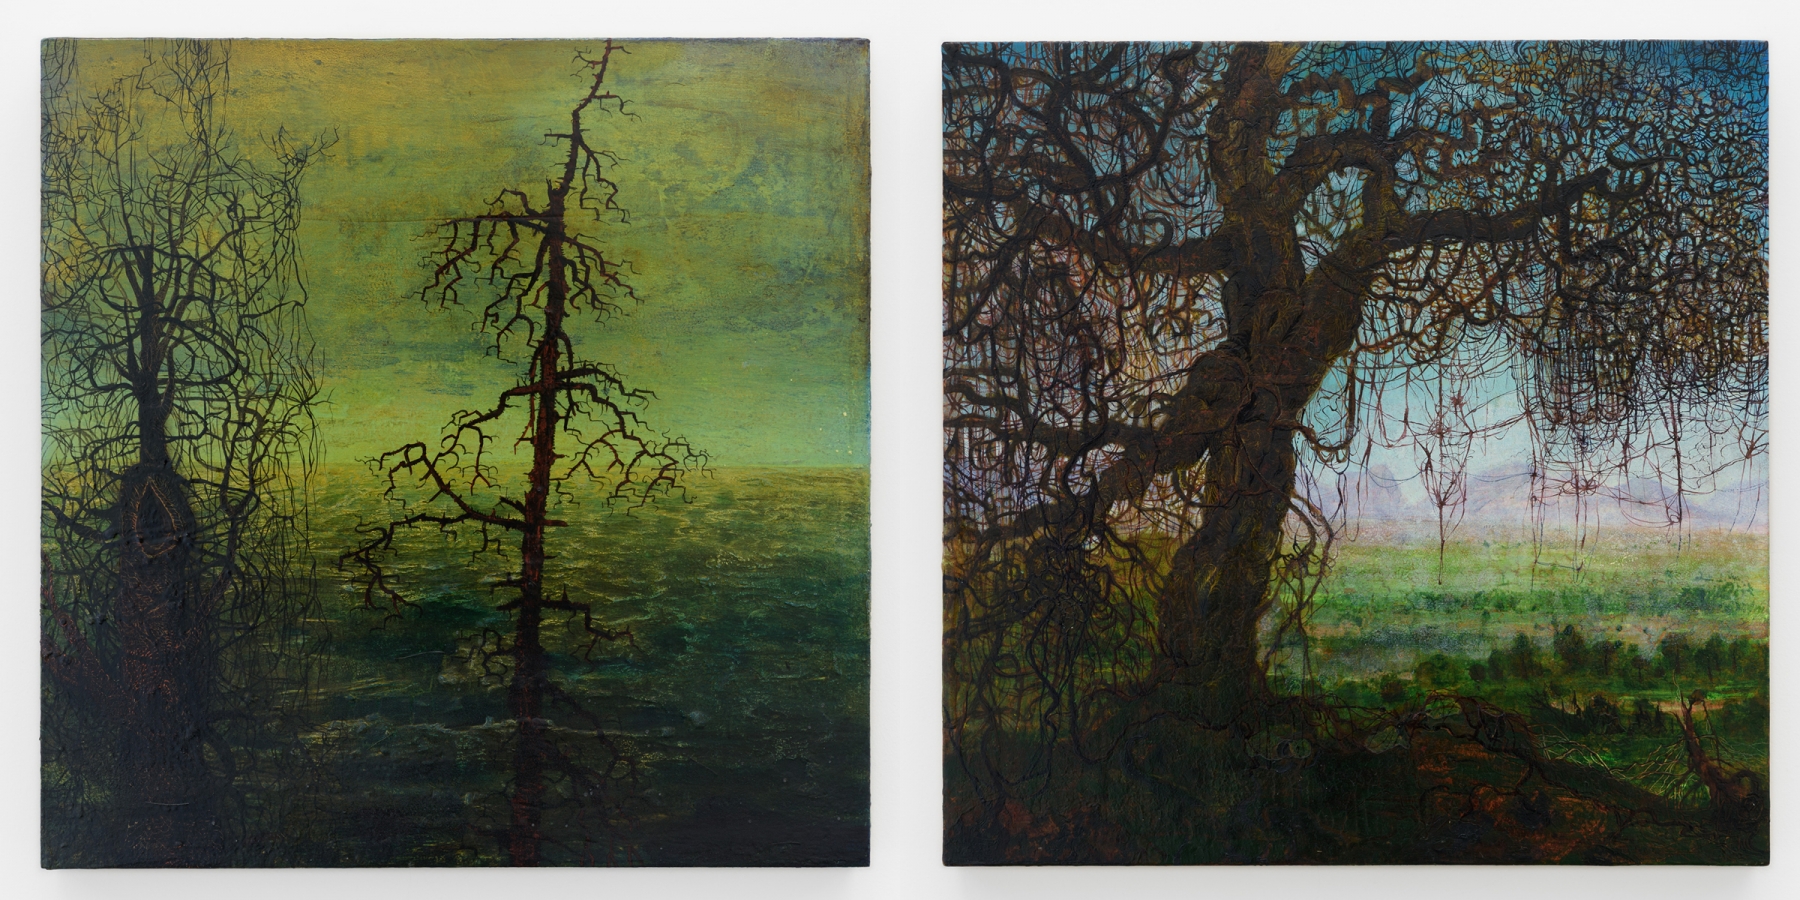 Left:&nbsp;Untitled, 2010 (JN 734)

Right:&nbsp;Untitled, 2011 (JN 735)

Inquire